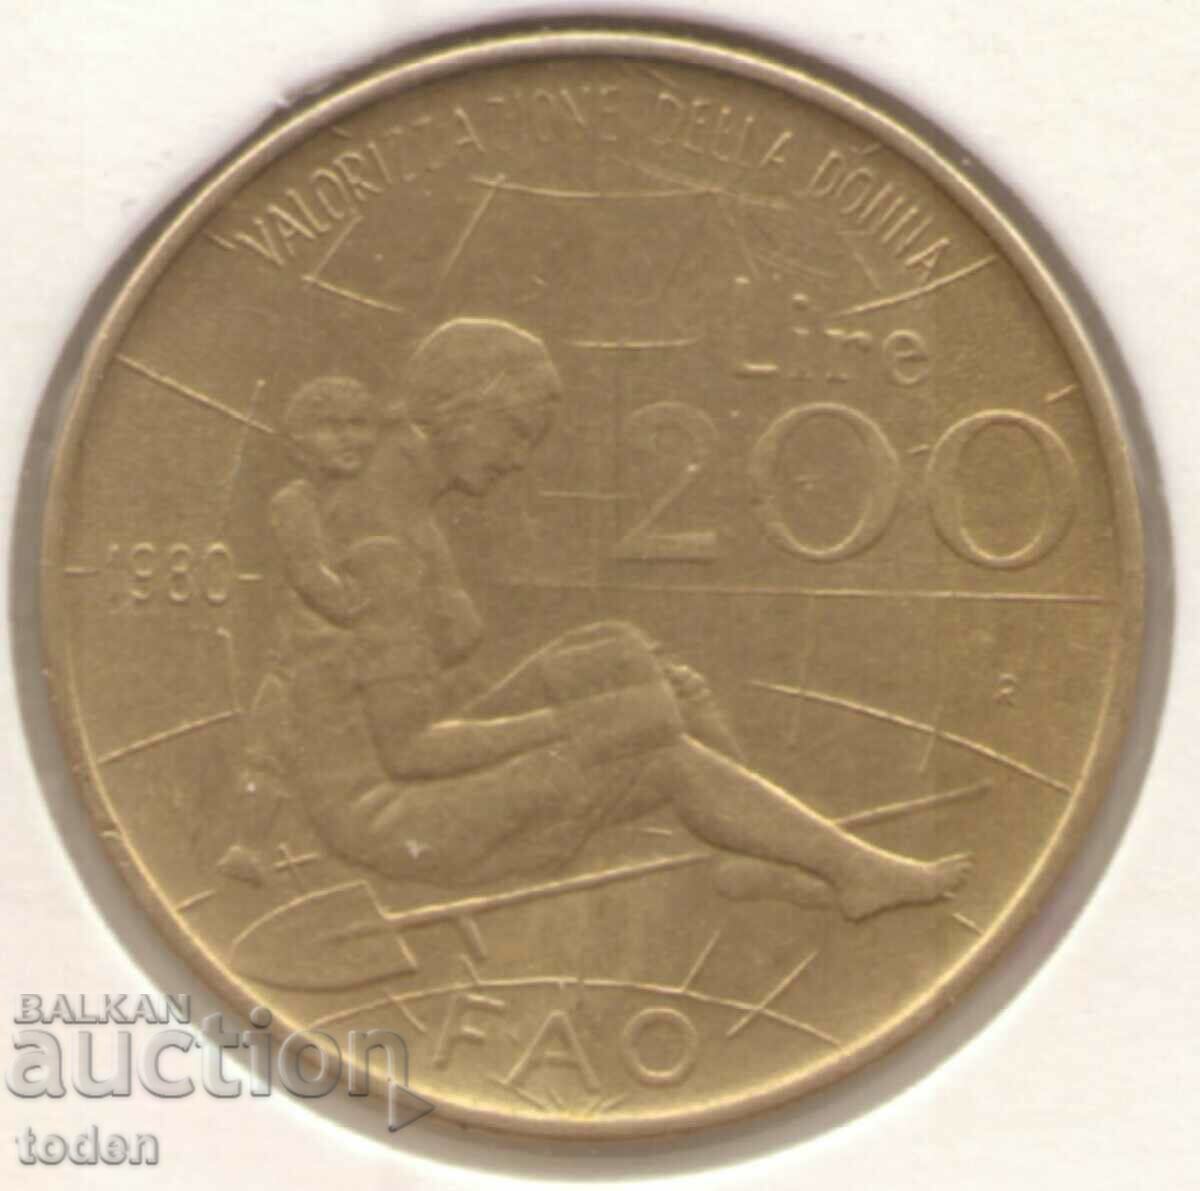 Ιταλία-200 λίρες-1980 R-KM # 107-FAO